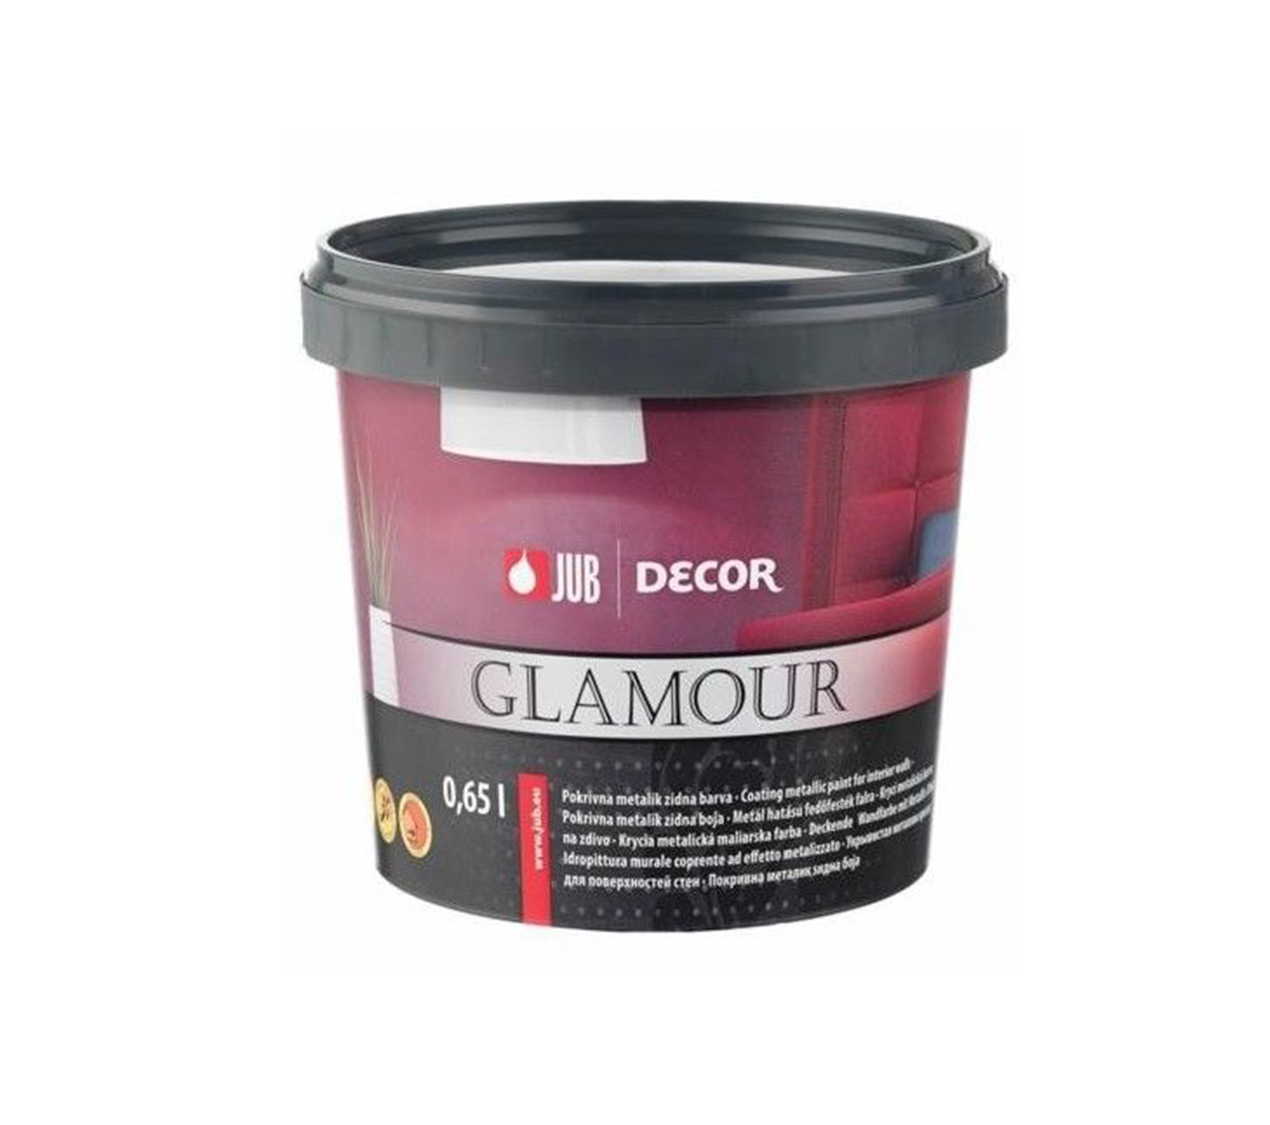 JUB DECOR GLAMOUR BLACK 0,65L